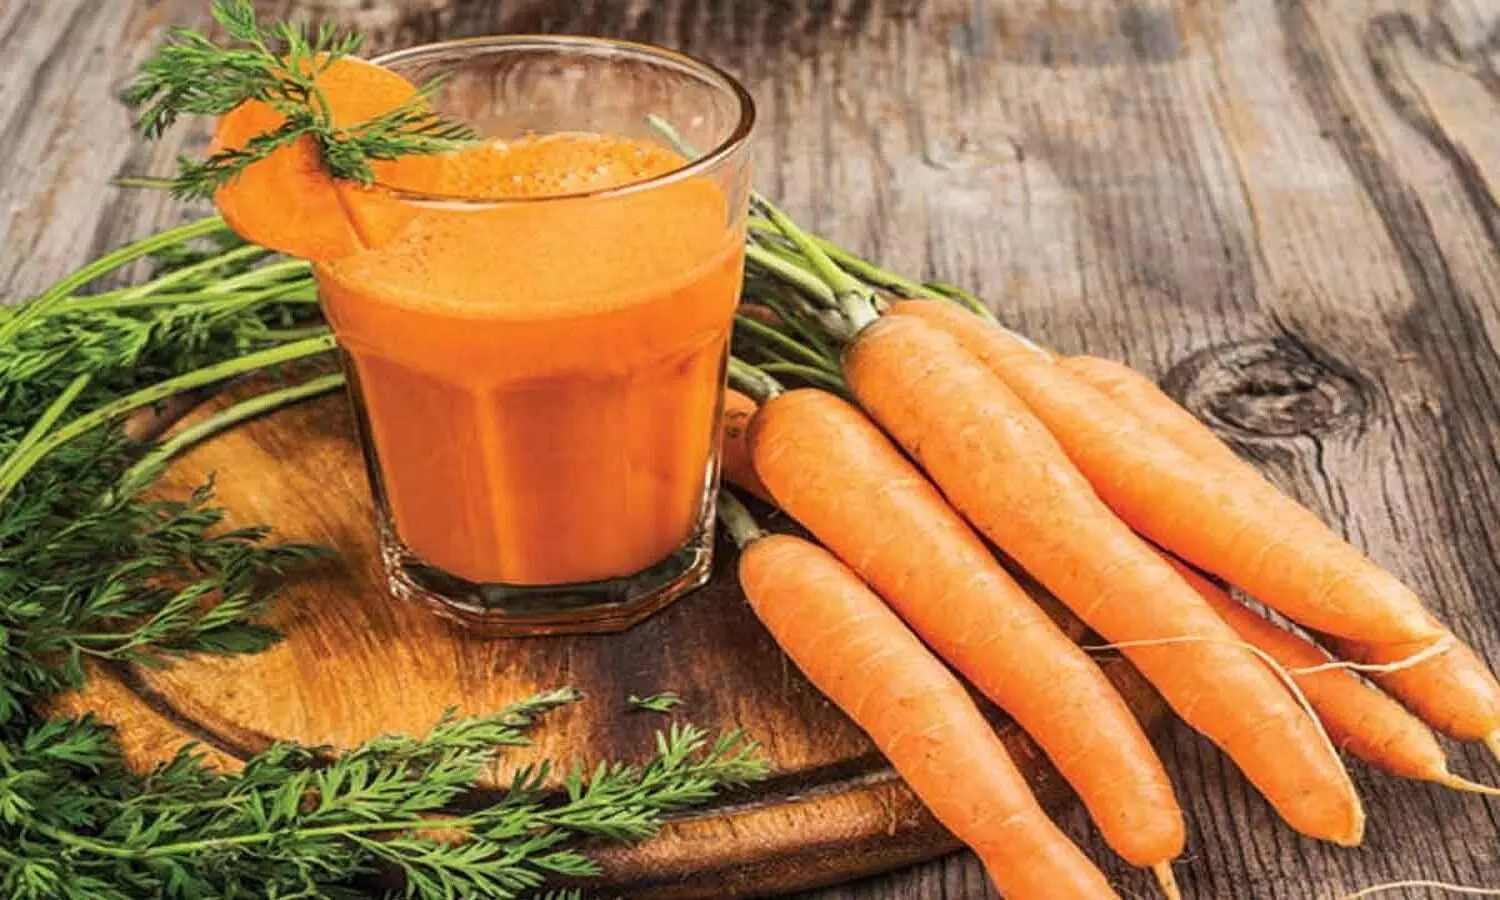 सर्दियों में गाजर के फायदे जानकर रह जाएंगे हैरान